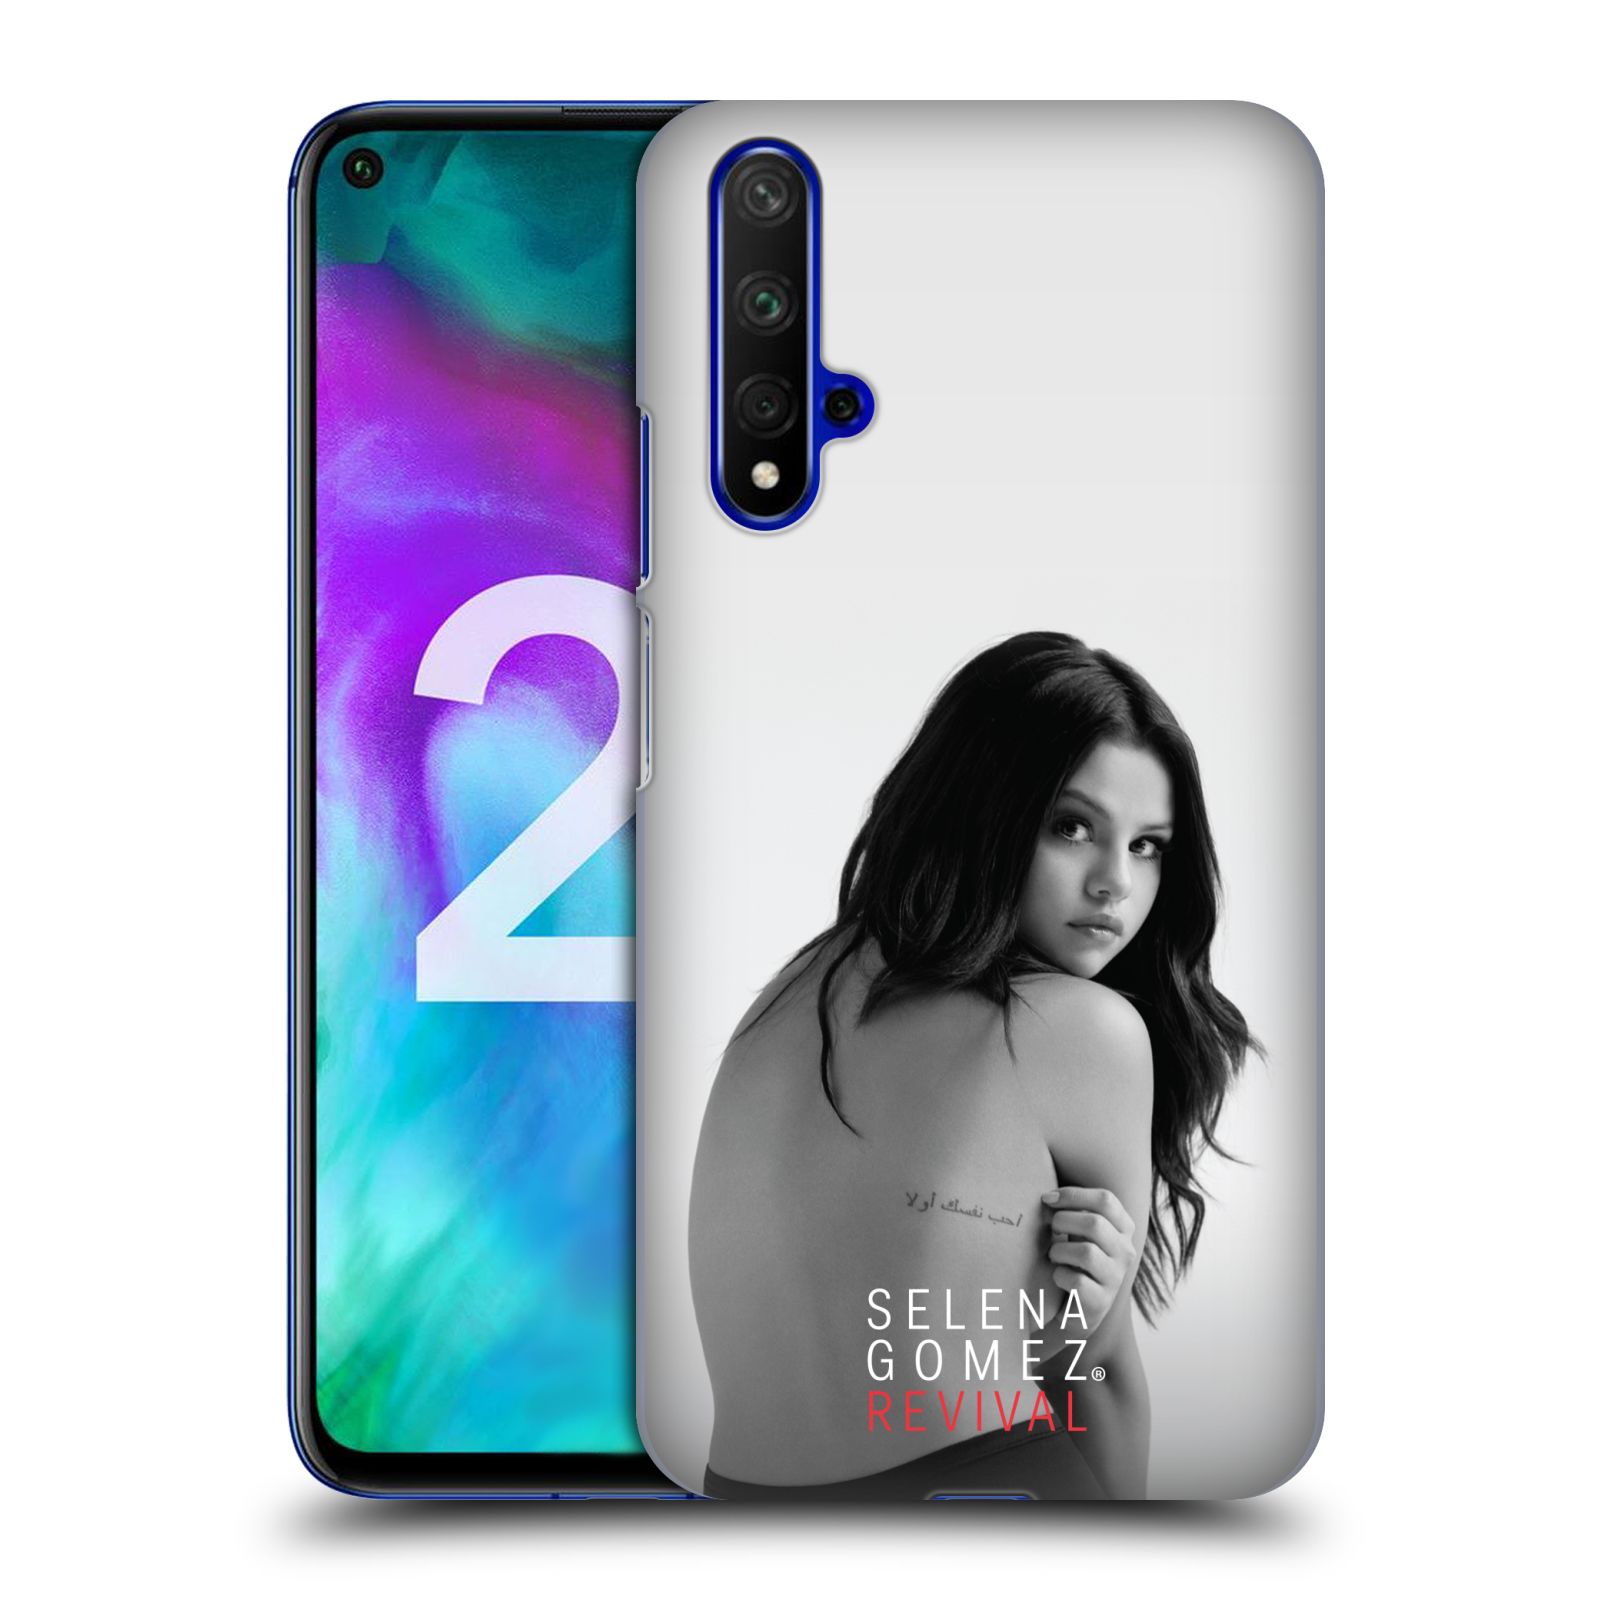 Pouzdro na mobil Honor 20 - HEAD CASE - Zpěvačka Selena Gomez foto Revival zadní strana